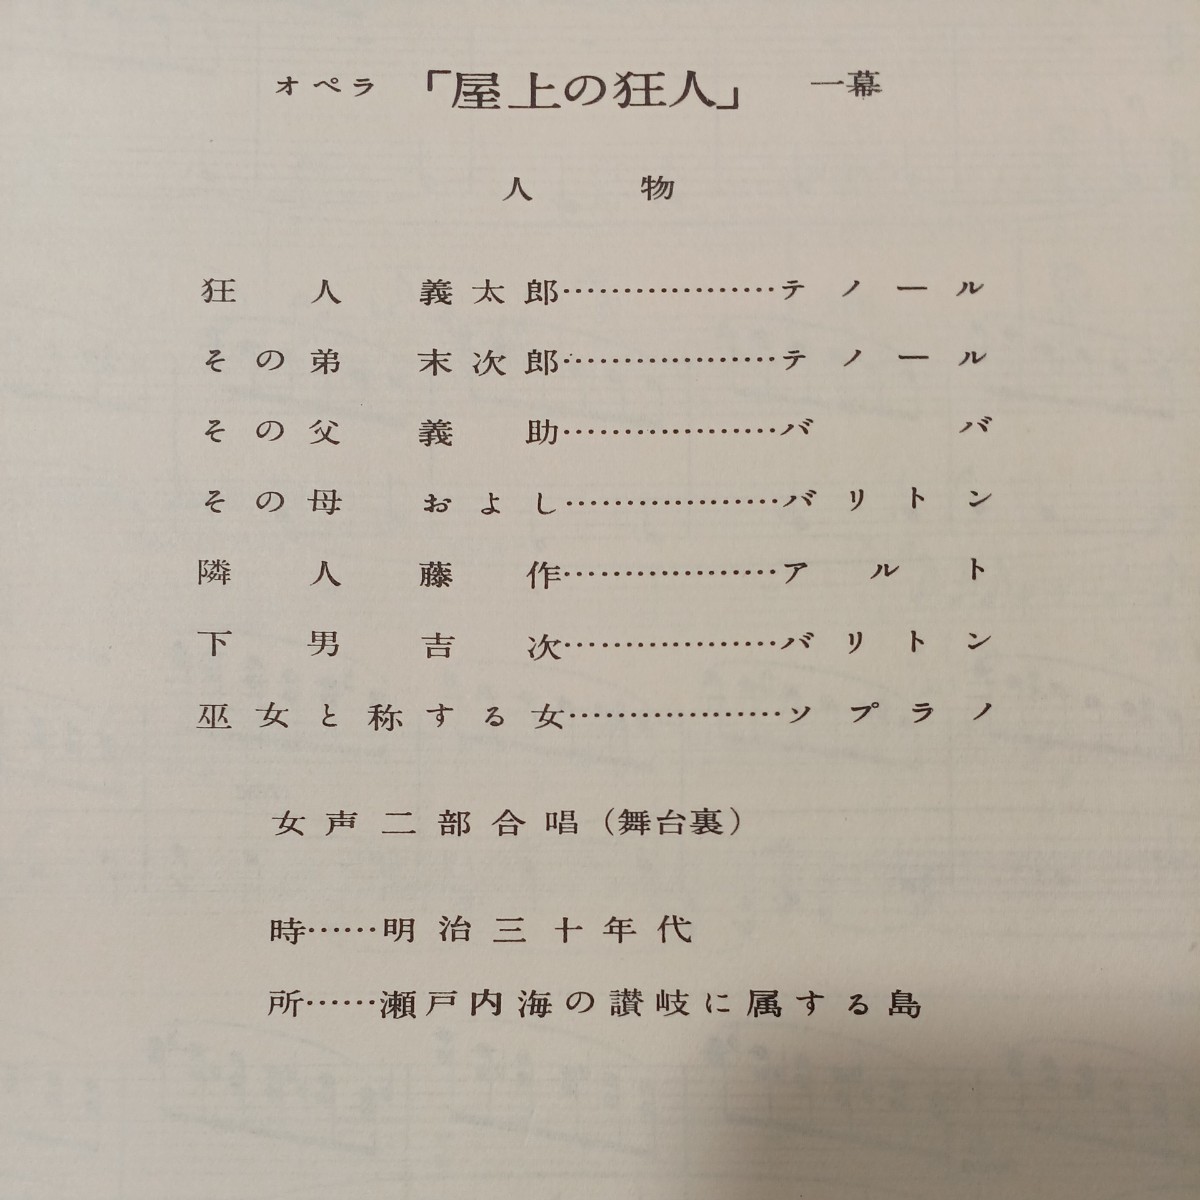 zaa-513! blue boy music script series no. 3 volume ( opera ).. shop on. madness person Kubota . music .. company 1957/4/10